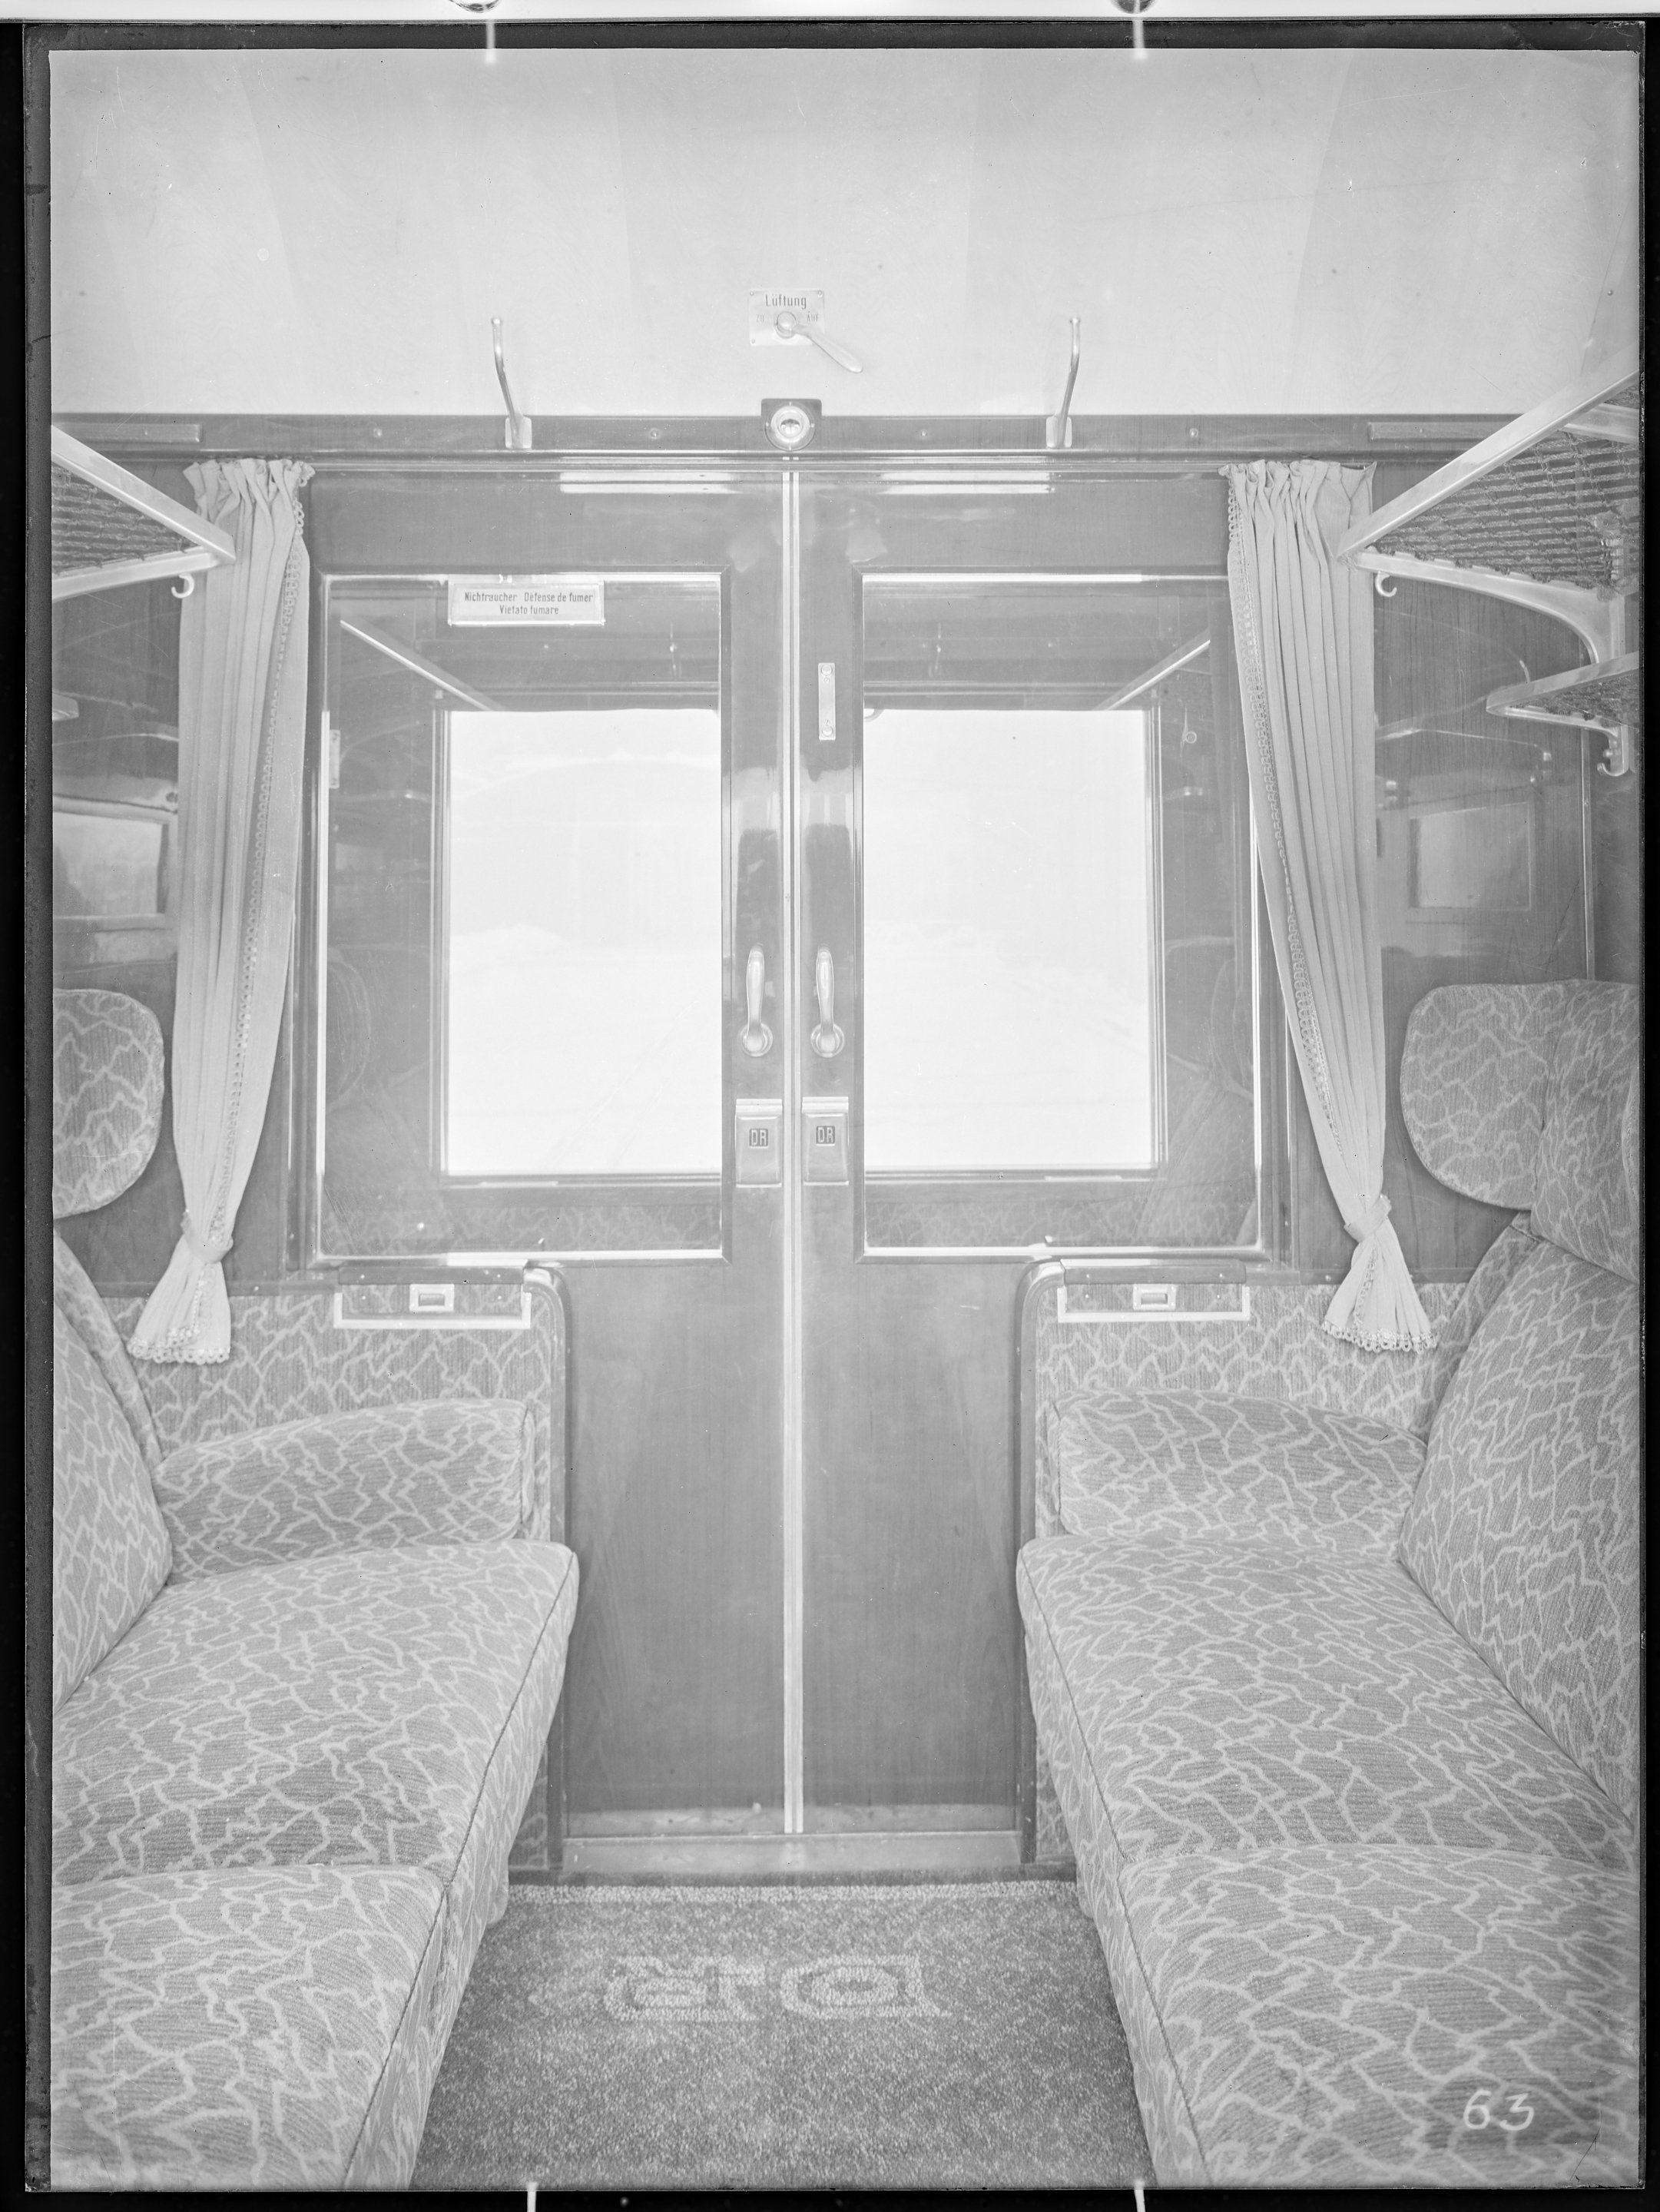 Fotografie: Sitzwagen (Innenansicht), Abteil zweiter Klasse, um 1939? (Verkehrsmuseum Dresden CC BY-NC-SA)